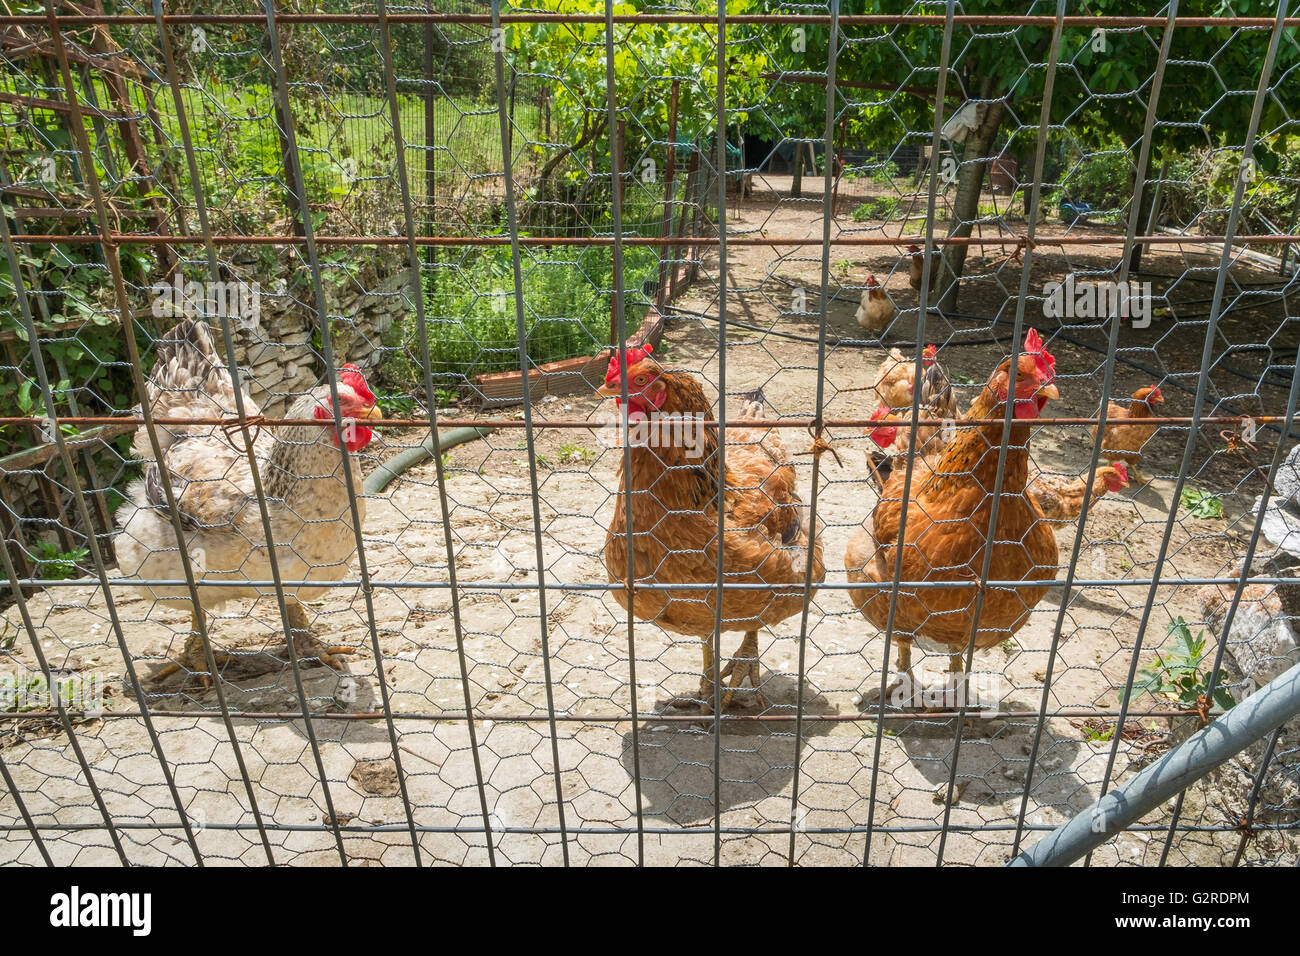 Pollos domésticos en un recinto cercado. Foto de stock